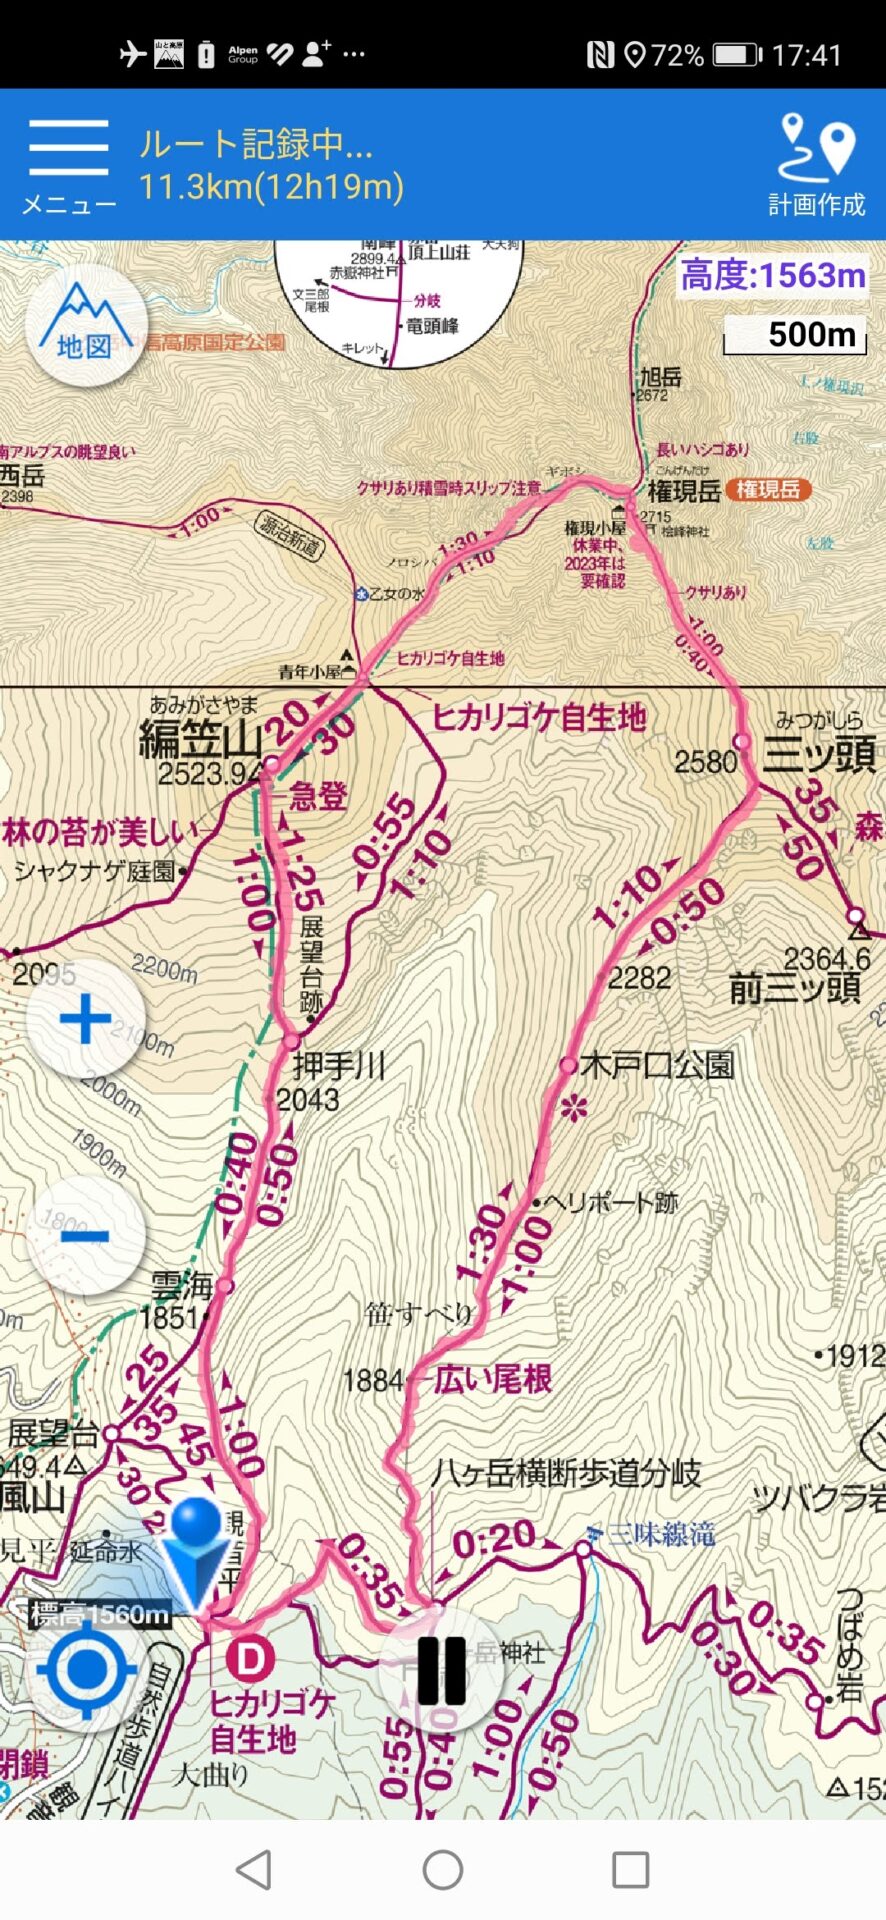 編笠山 権現岳 地図